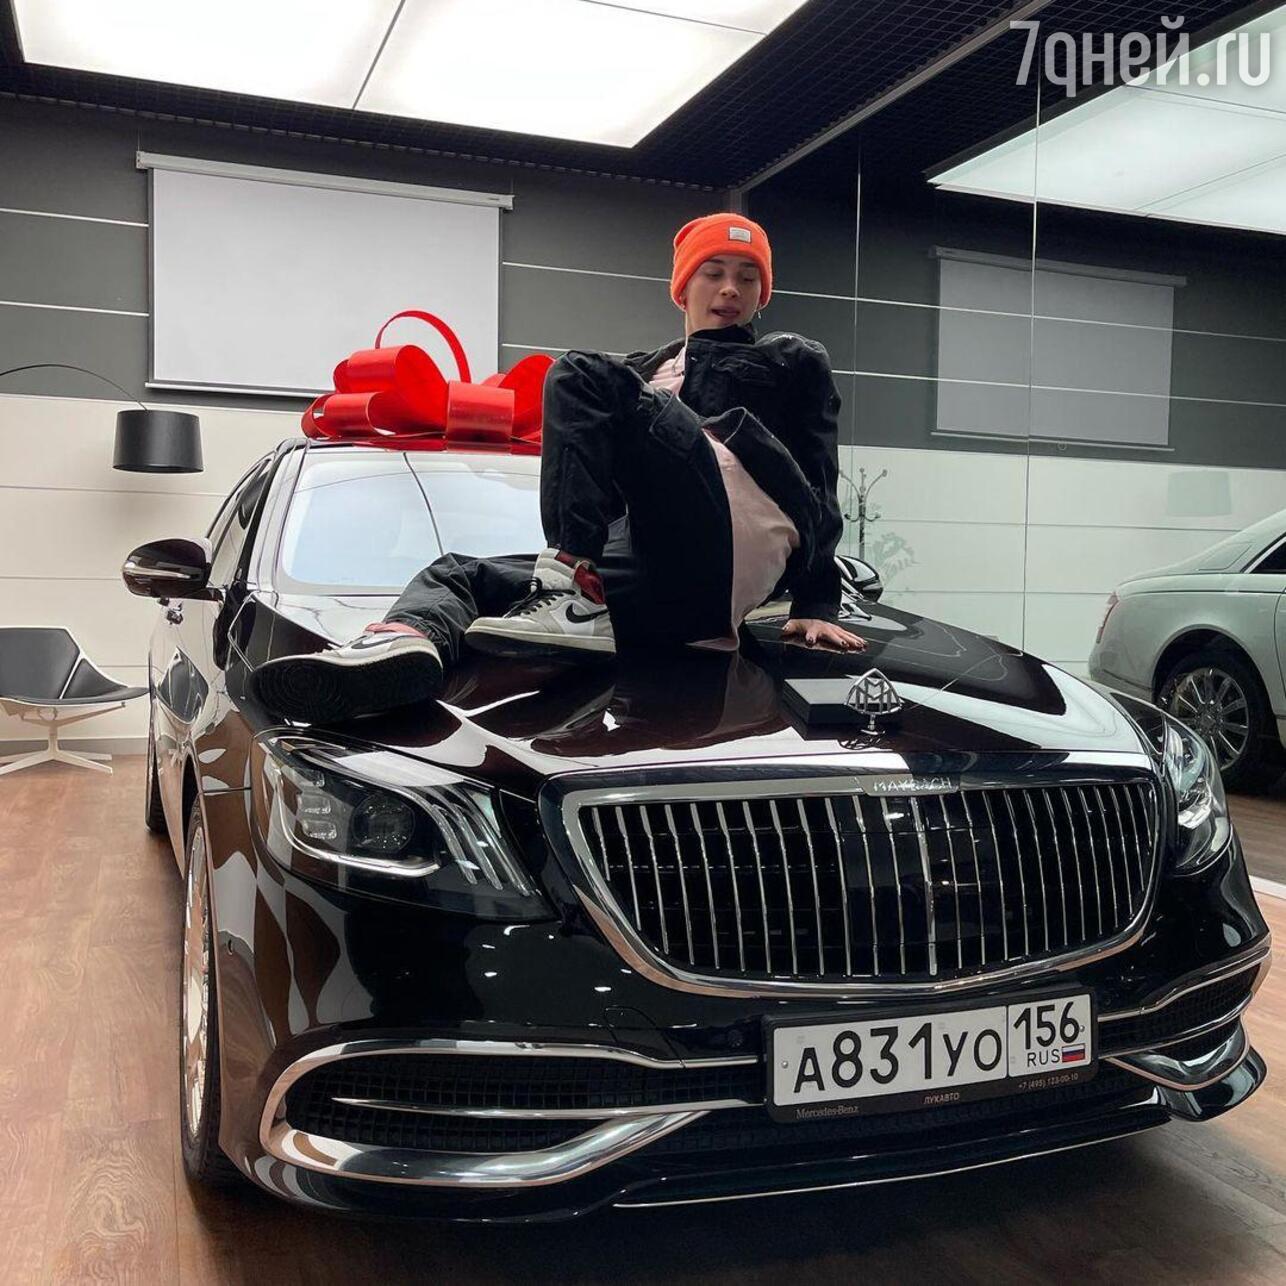 Автомобиль за 1 000 000 рублей. Машина Дани Милохина 2021. Машина Дани Милохина Майбах.